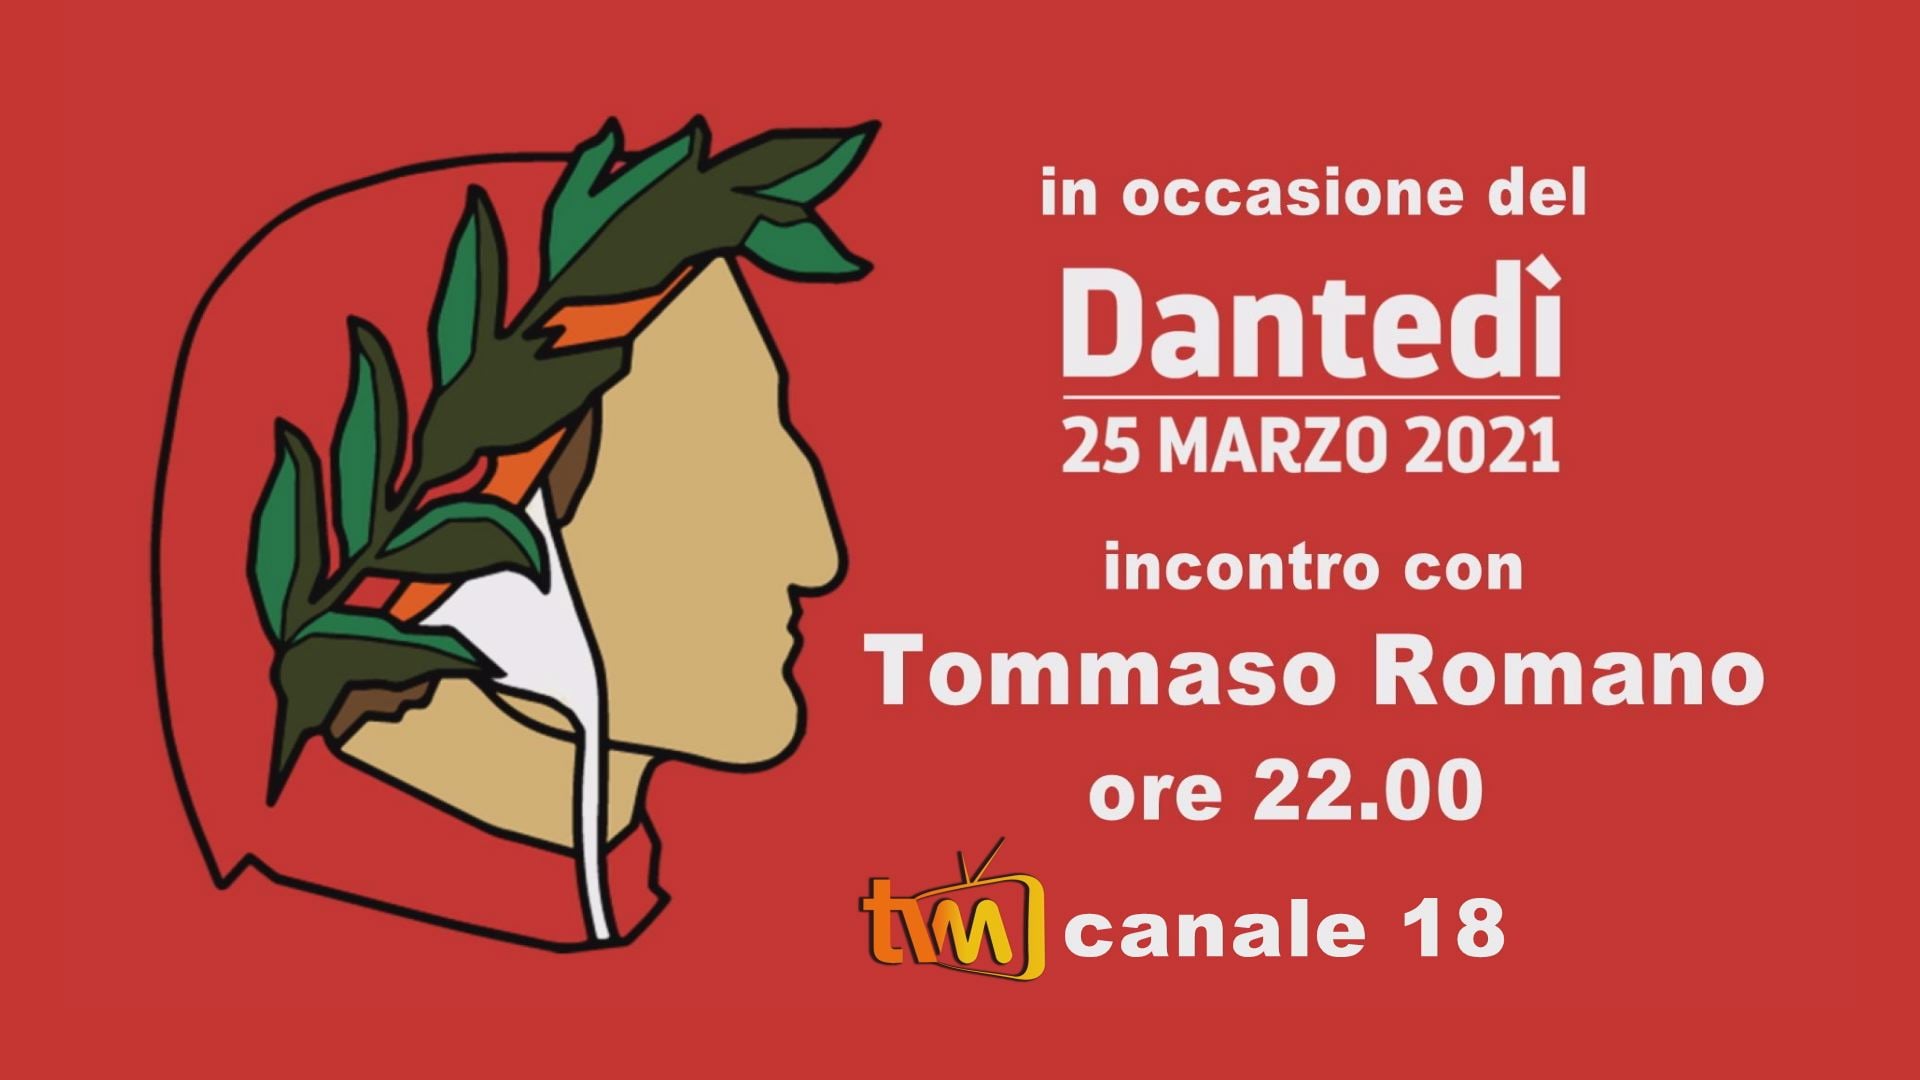 "Dantedì" incontro con Tommaso Romano sull'emittente televisiva TVM (canale 18), 25 marzo dalle ore 22:00